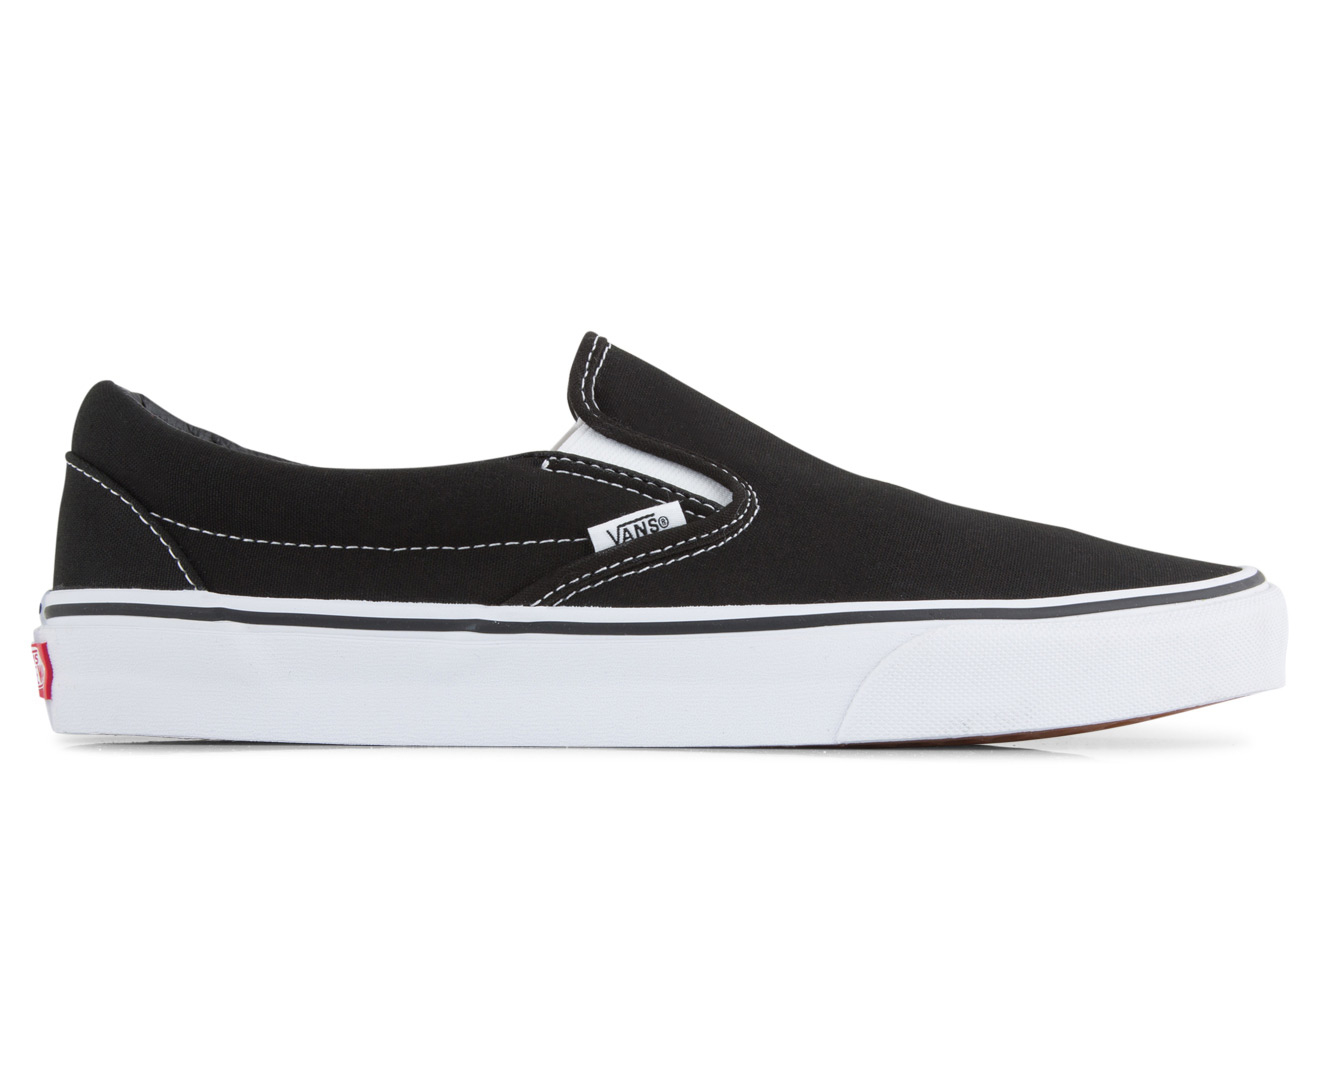 Vans Men's Classic Slip-On Shoe - Black/White